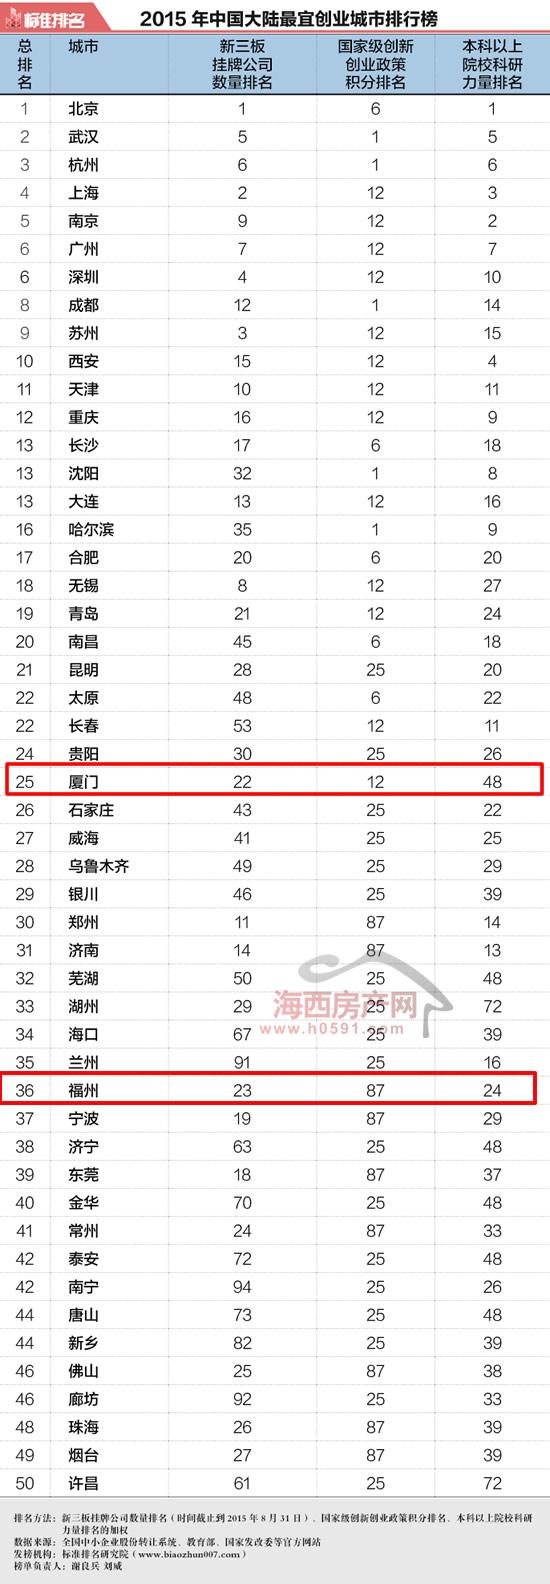 2015年中国大陆最宜创业城市排行榜:福州仅列